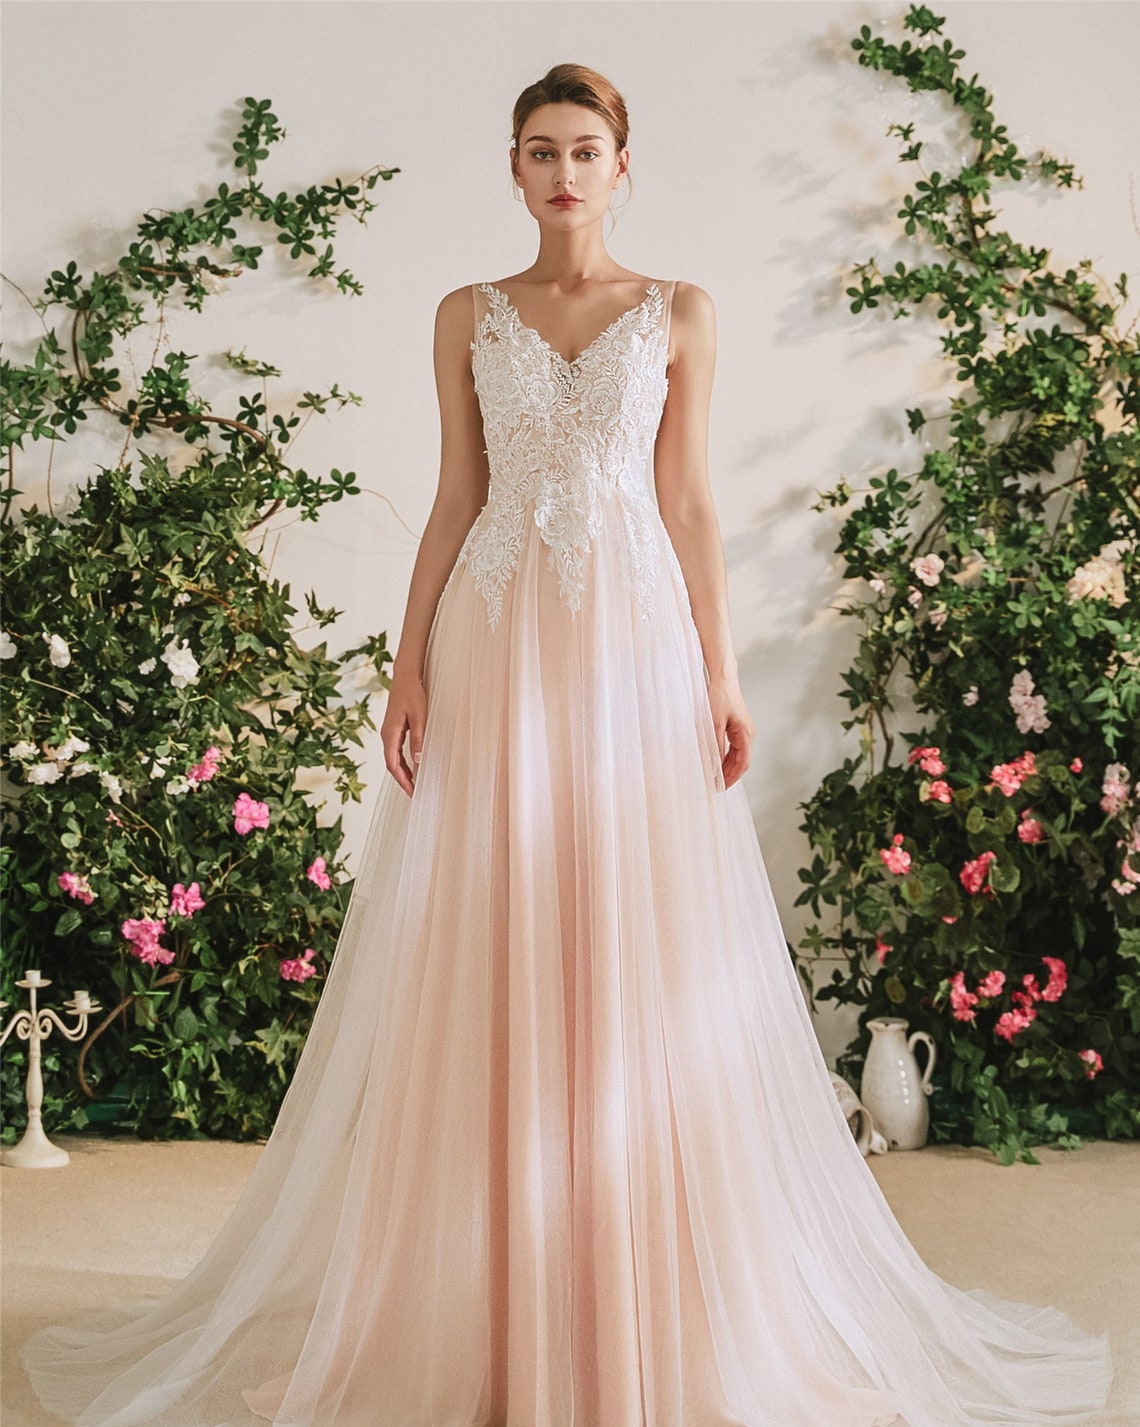 Romantic Soft Pink & White Chiffon Lace Wedding Dress or image 1